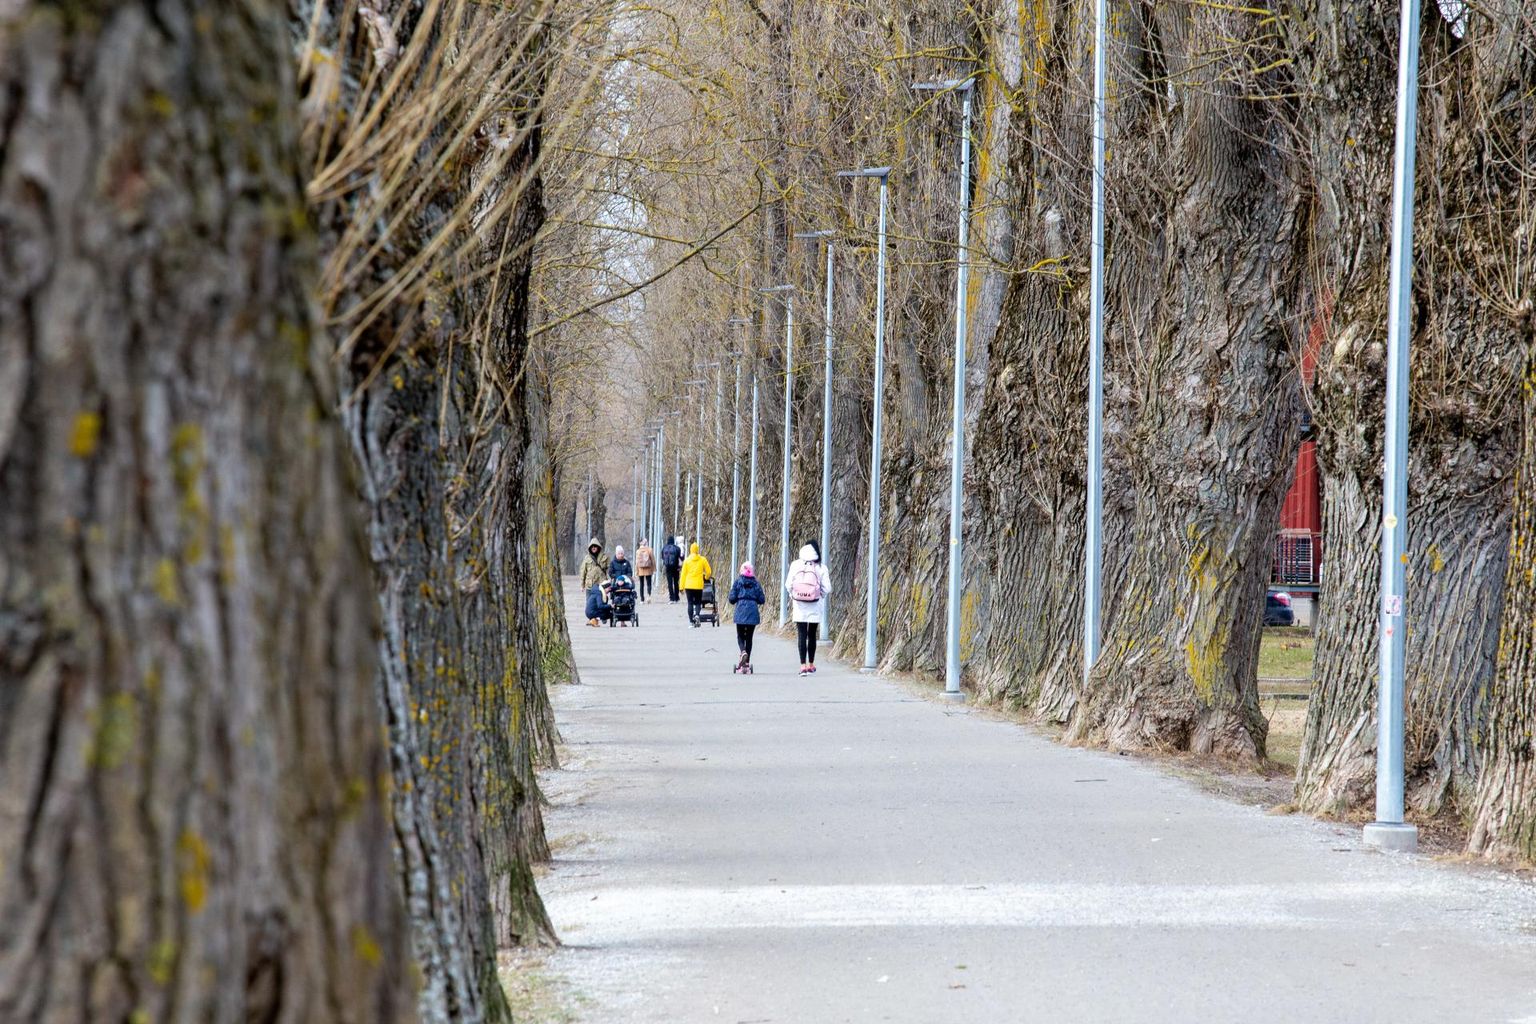 Eilsel tuulisel päeval Ujula tänava paplialleel oksi ei lennanud. Kui need vanad puud muutuvad inimestele aga ohtlikuks, tuleb linnal oht kõrvaldada.